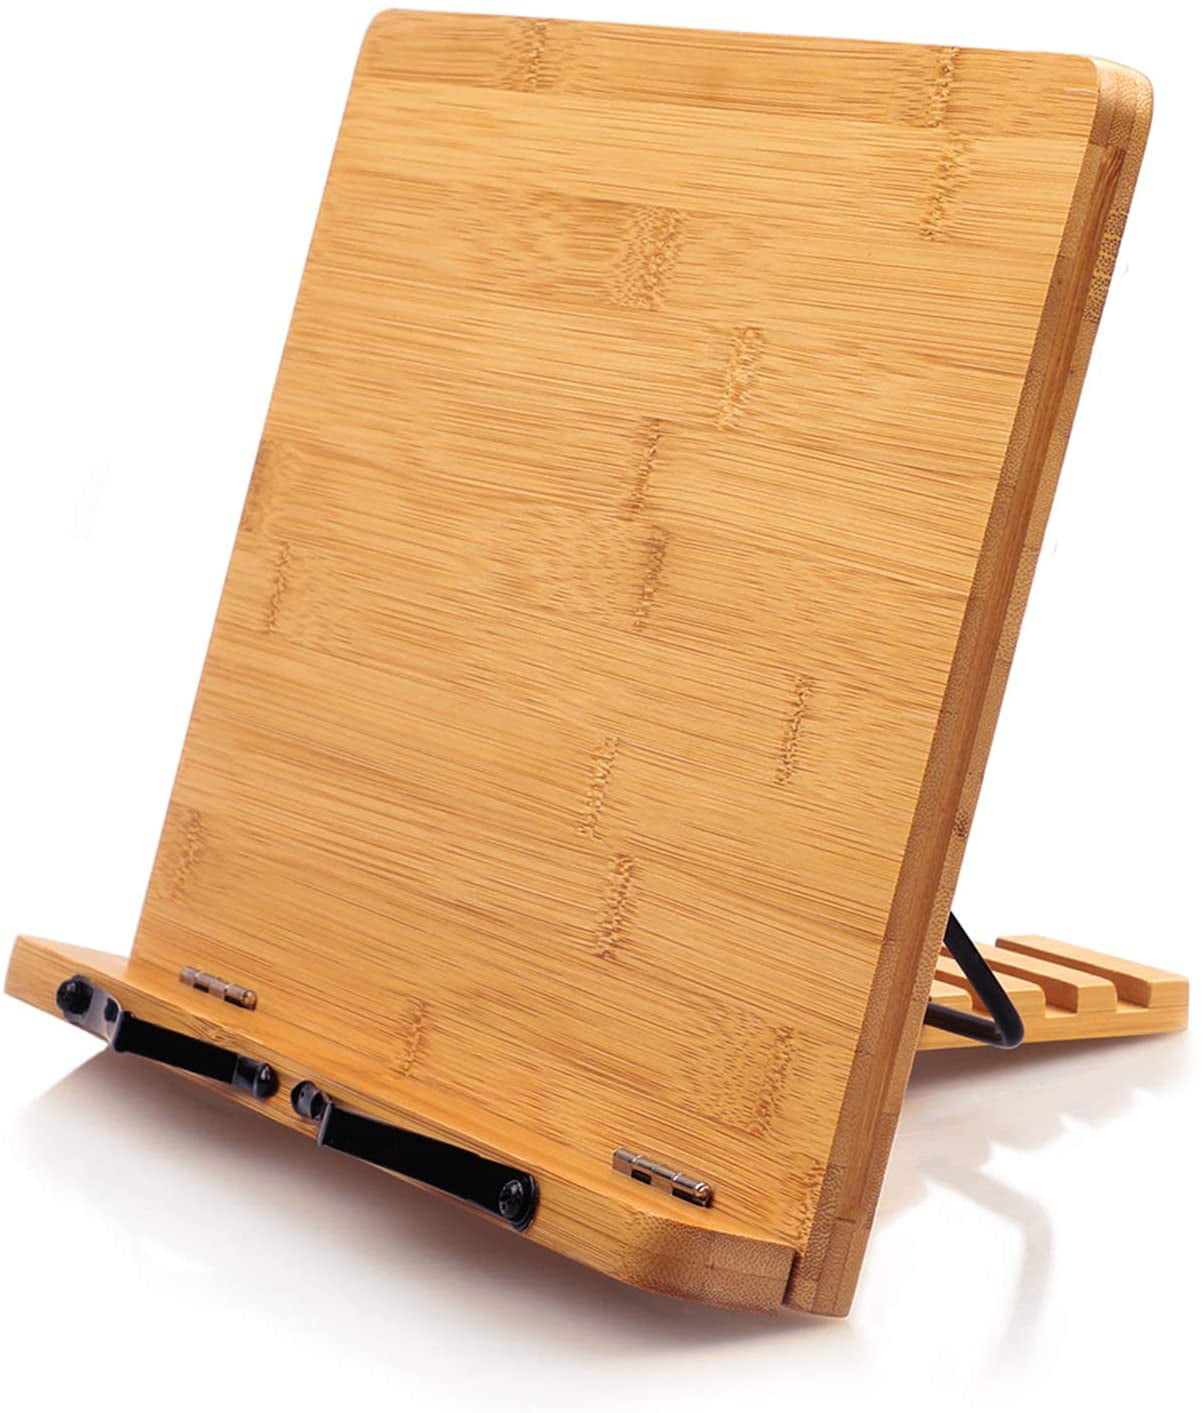 Foldable Adjustable Wooden Cook Book Holder Rack Stand Reading Rest Organiser 